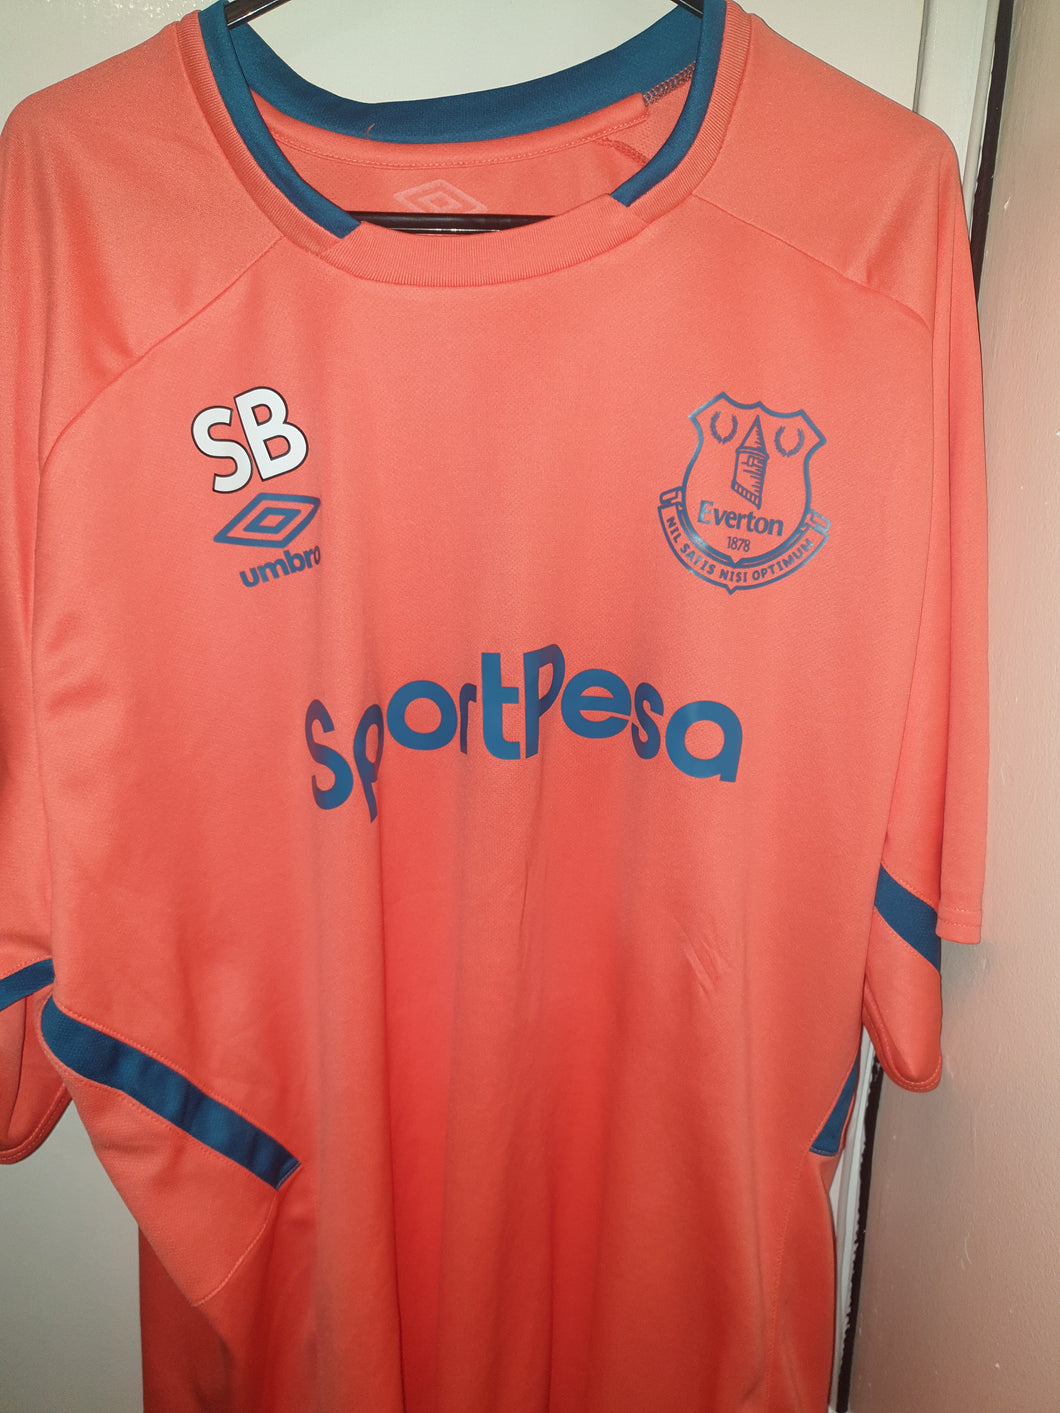 Everton Fc 2015-16 Training Shirt (Size 3xl/2xl)